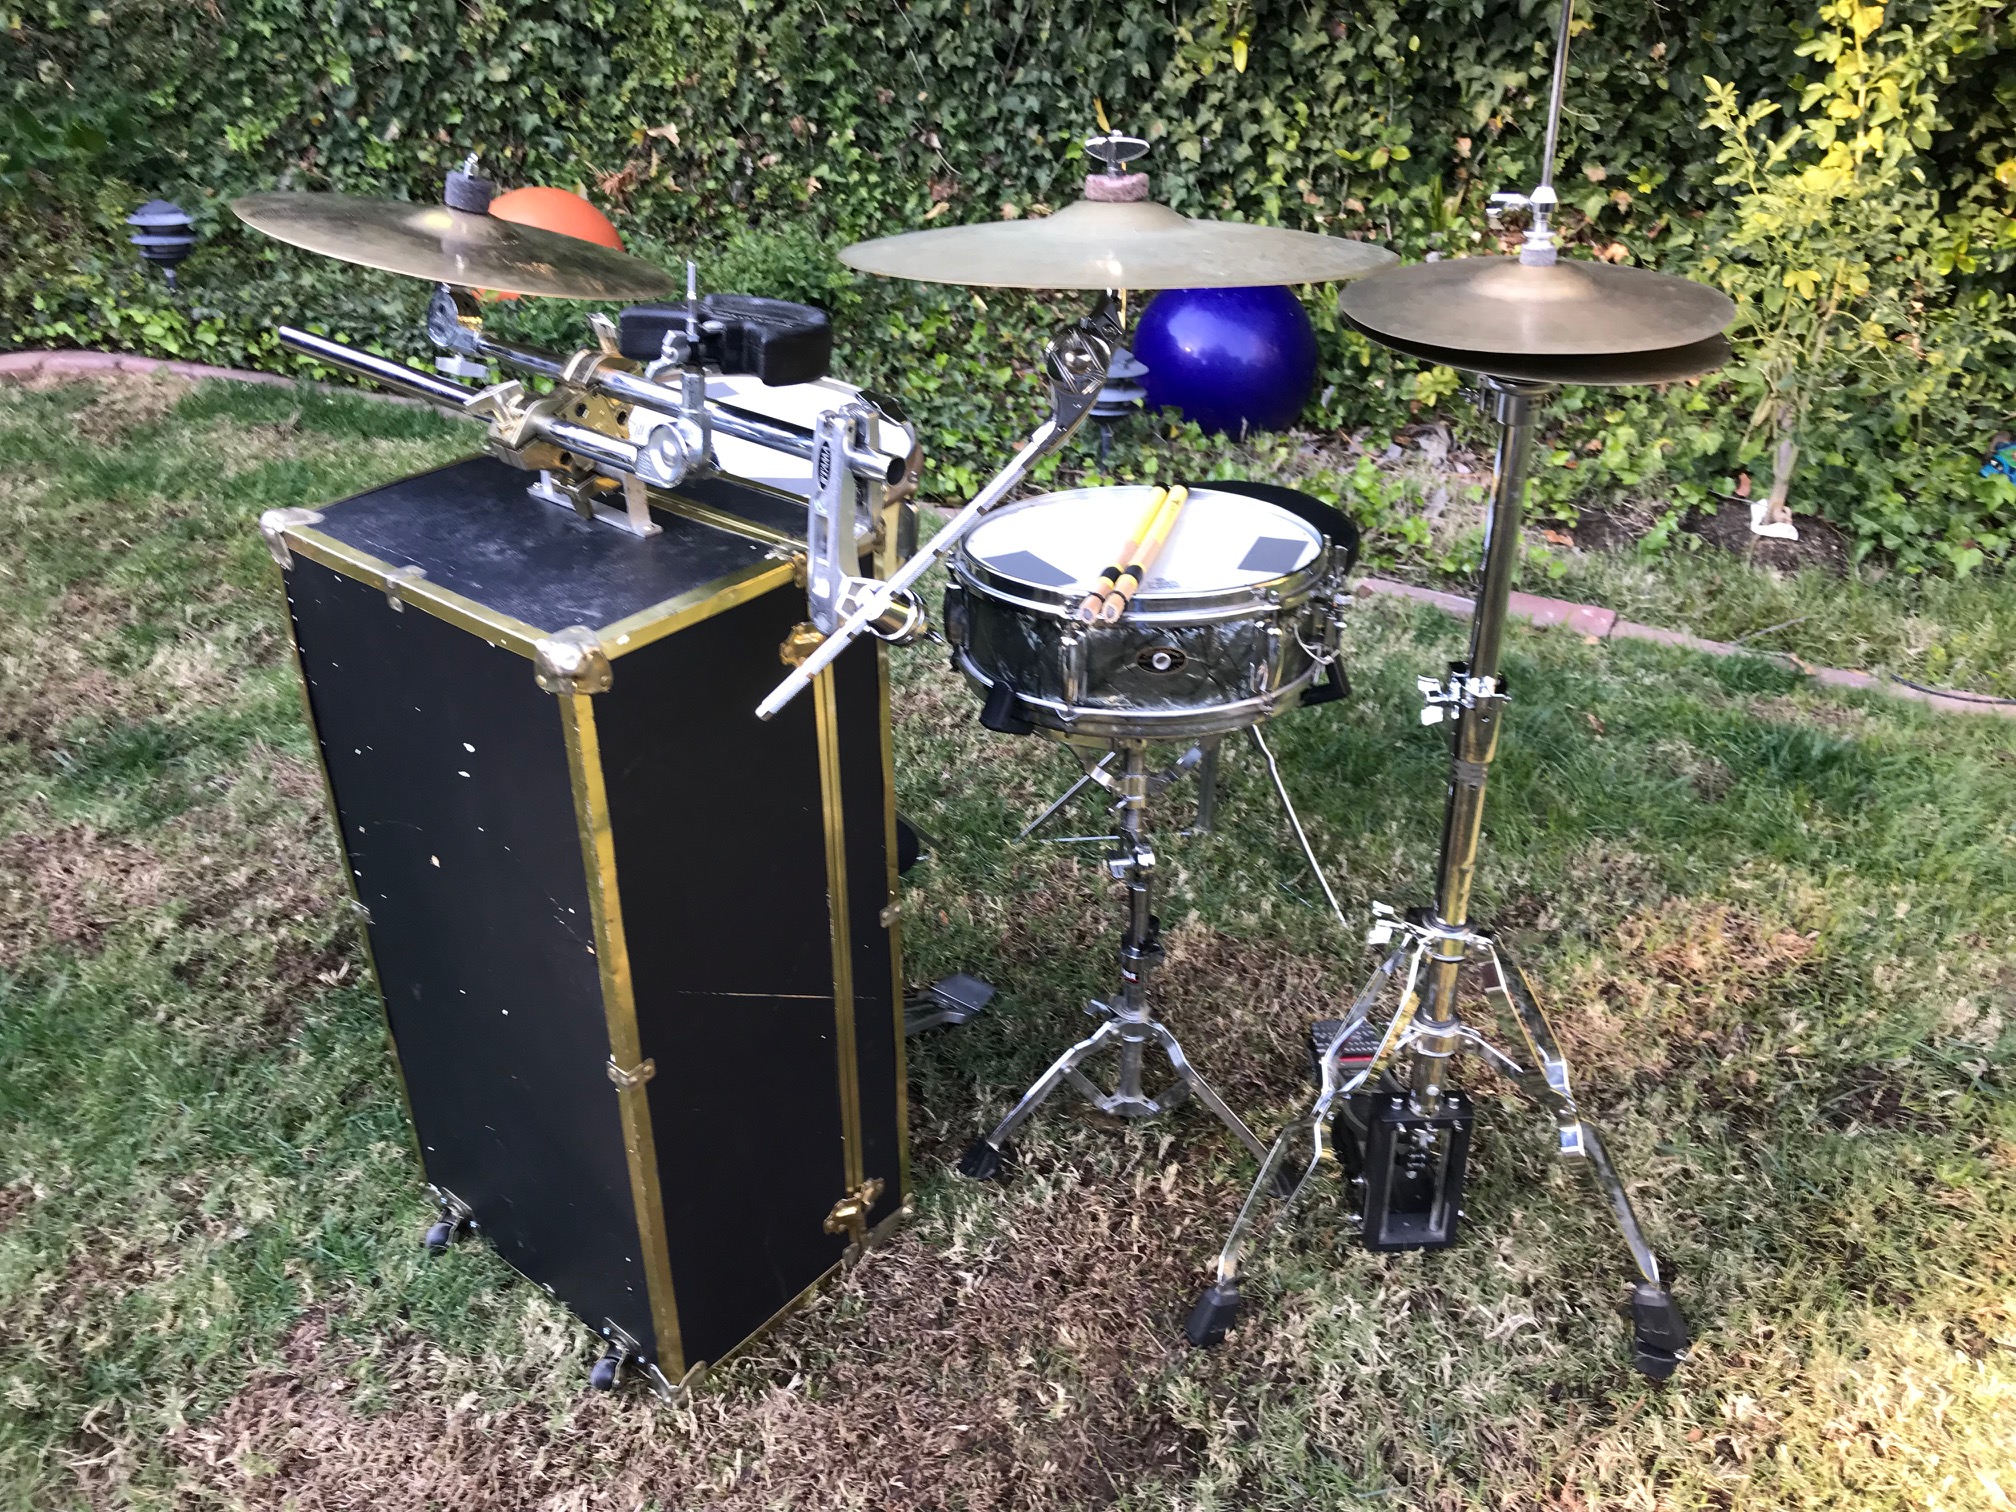 footlocker drum kit